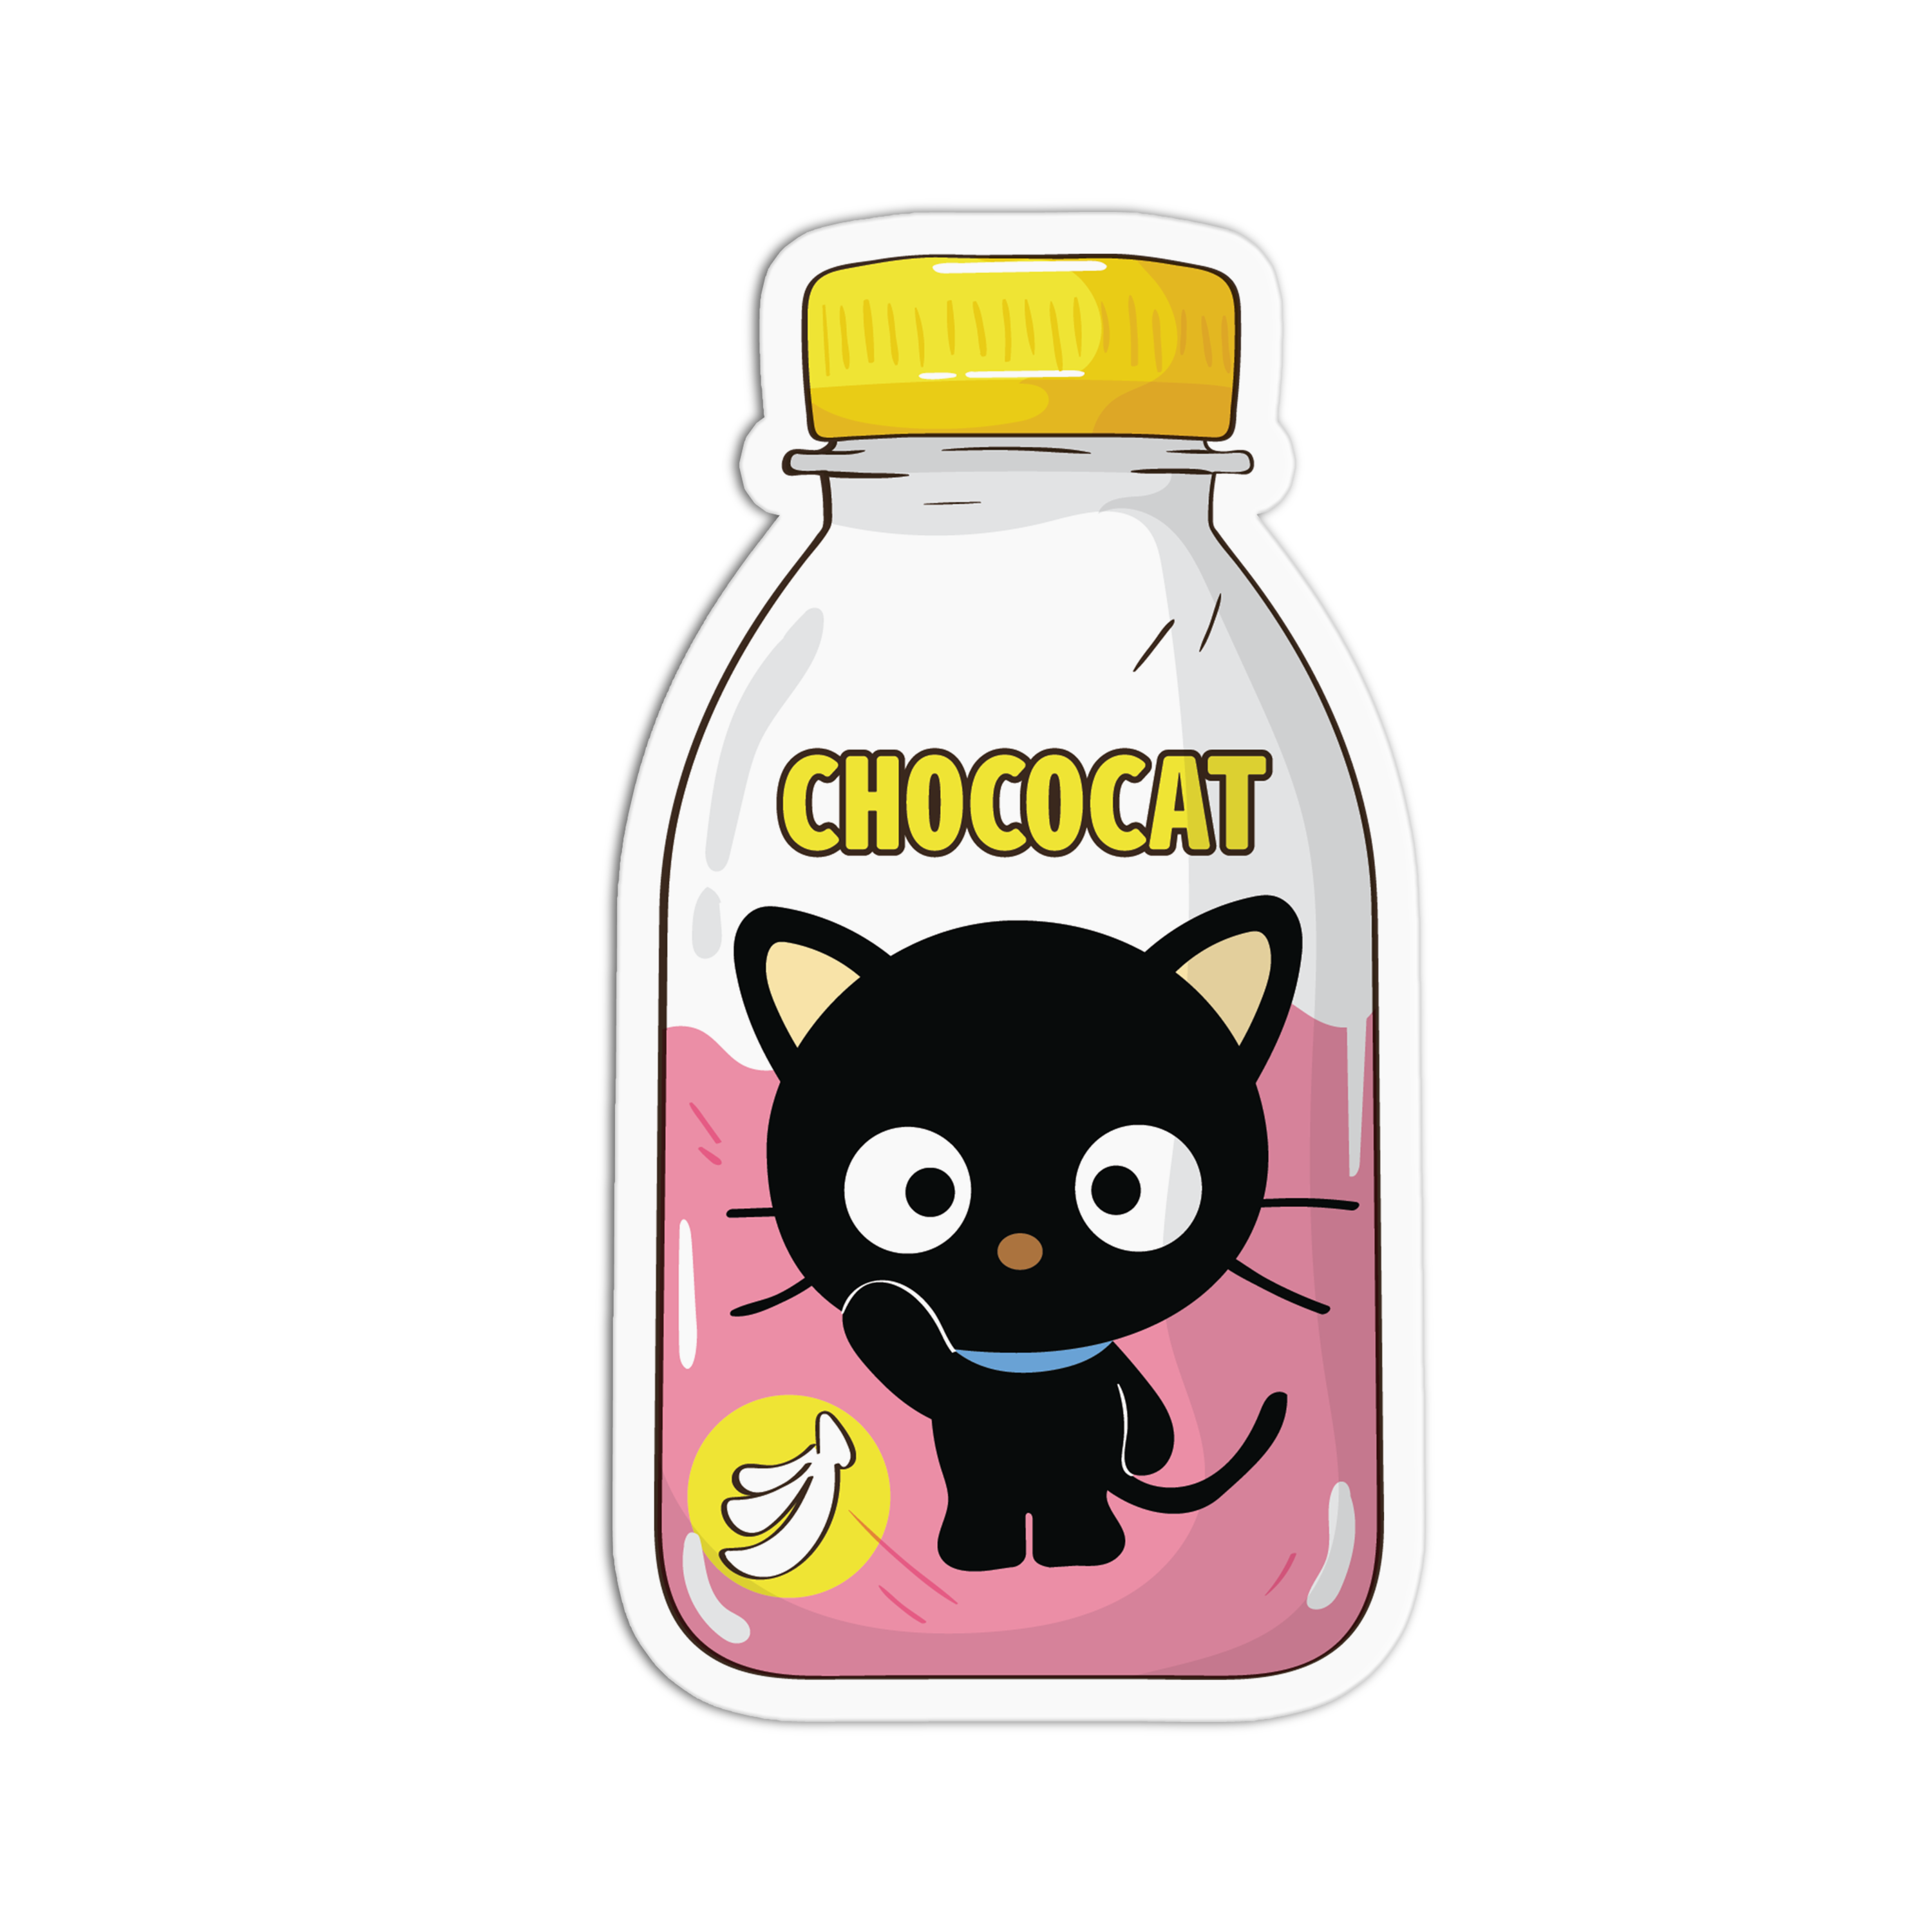 Choco cat 🐱 #fyp #sanrio #chococat #sticker #foryou